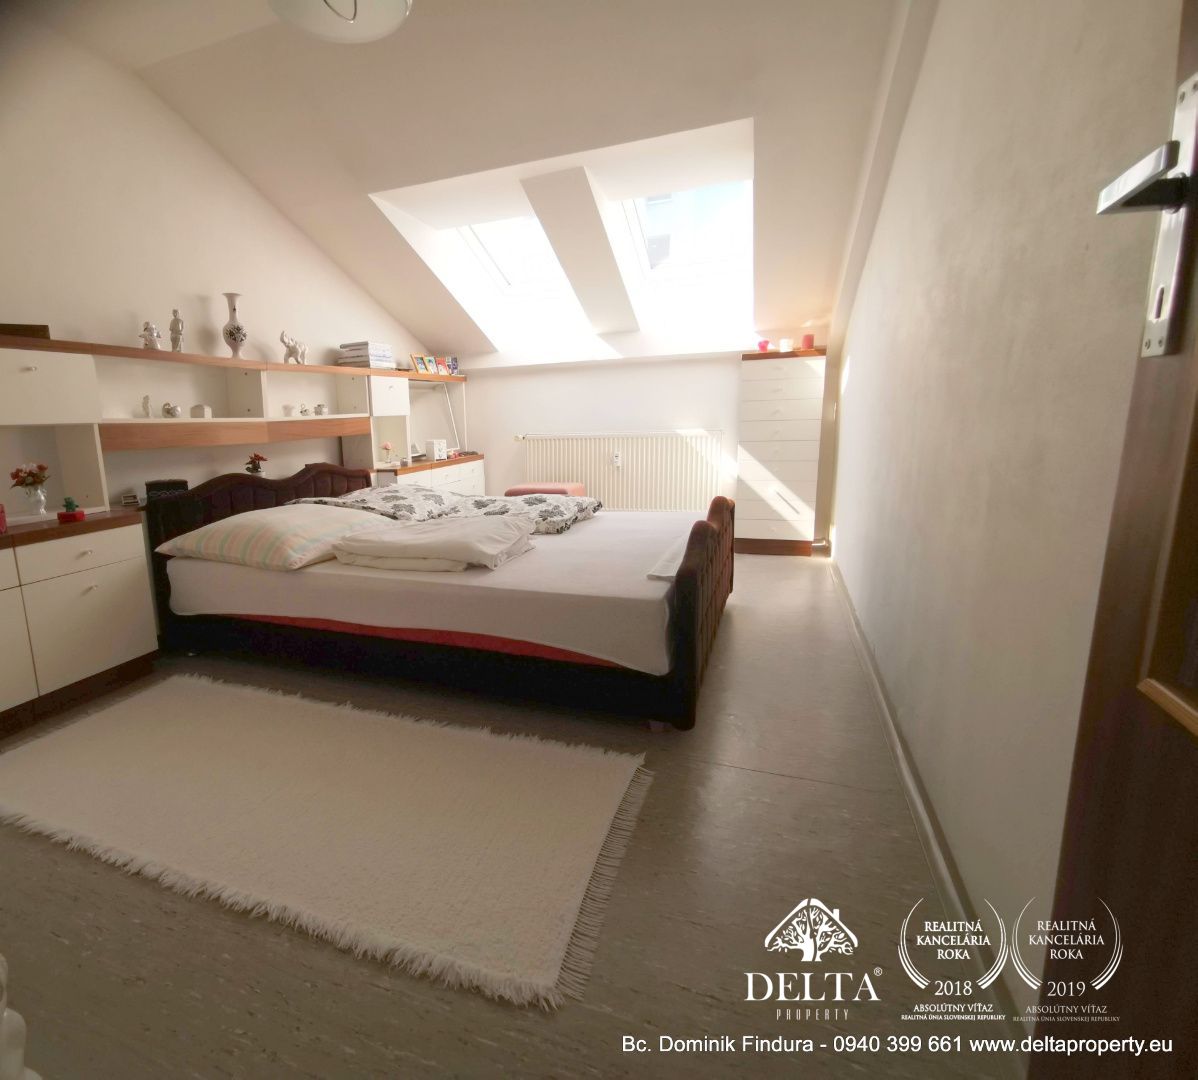 DELTA - Podkrovný 2-izbový byt na predaj, 66m2, ul. L.Svobodu